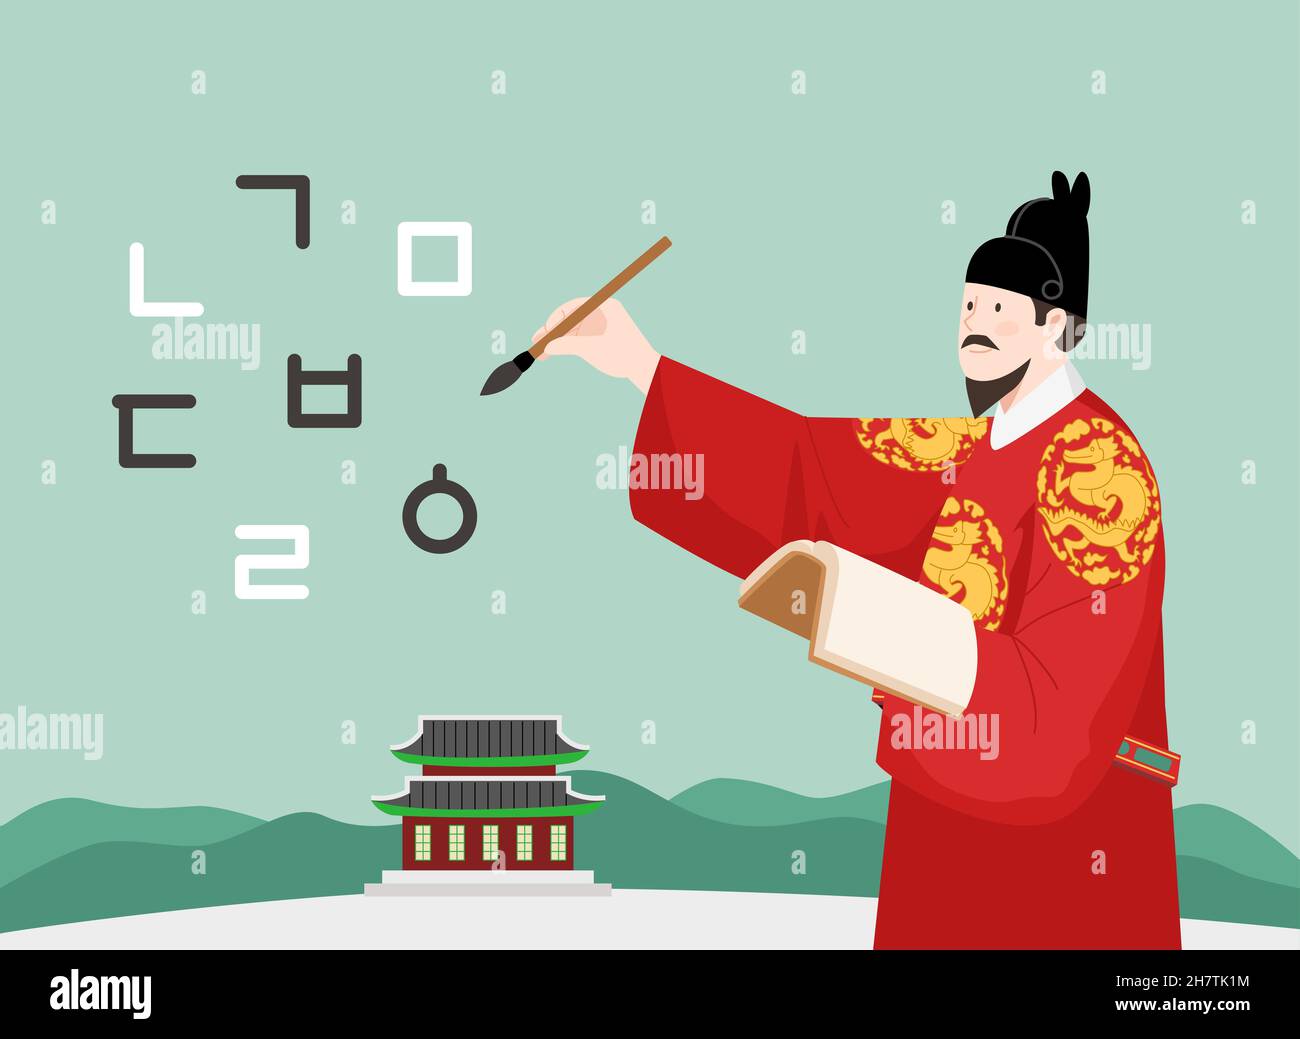 King Sejong écrit Hangul, caractères coréens Banque D'Images